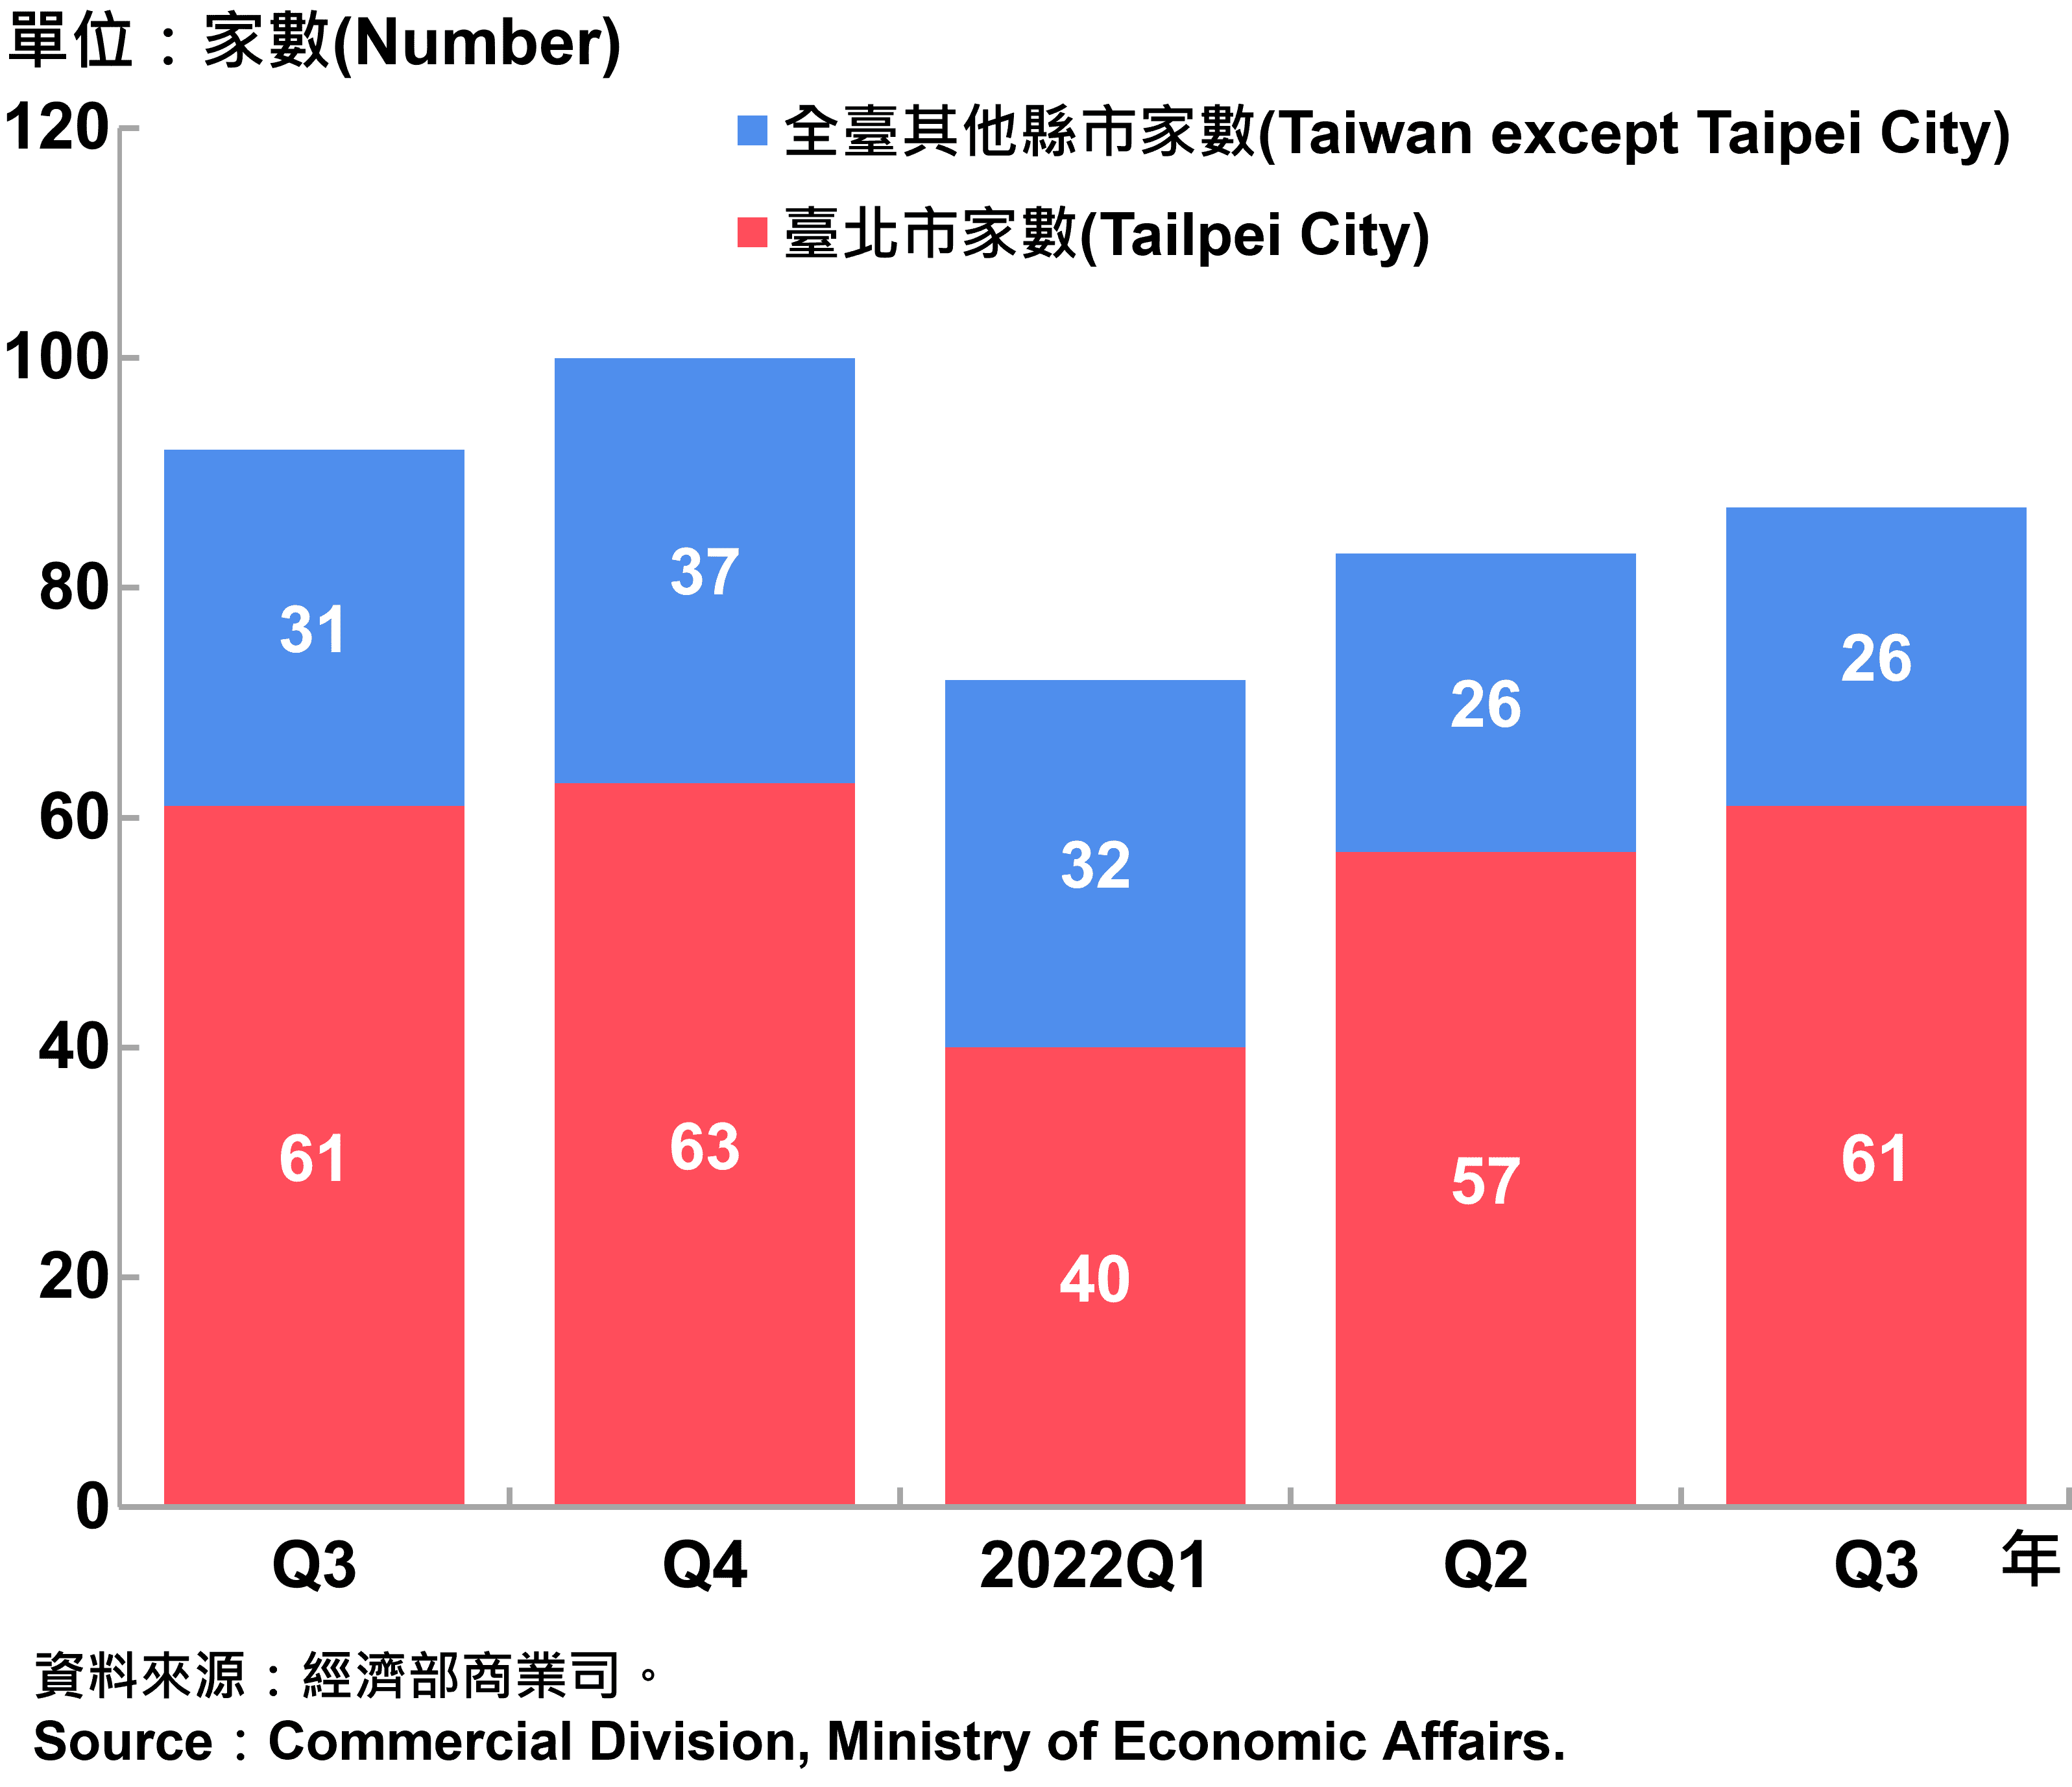 臺北市外商公司新設立家數—2022Q3 Number of Newly Established Foreign Companies in Taipei City—2022Q3